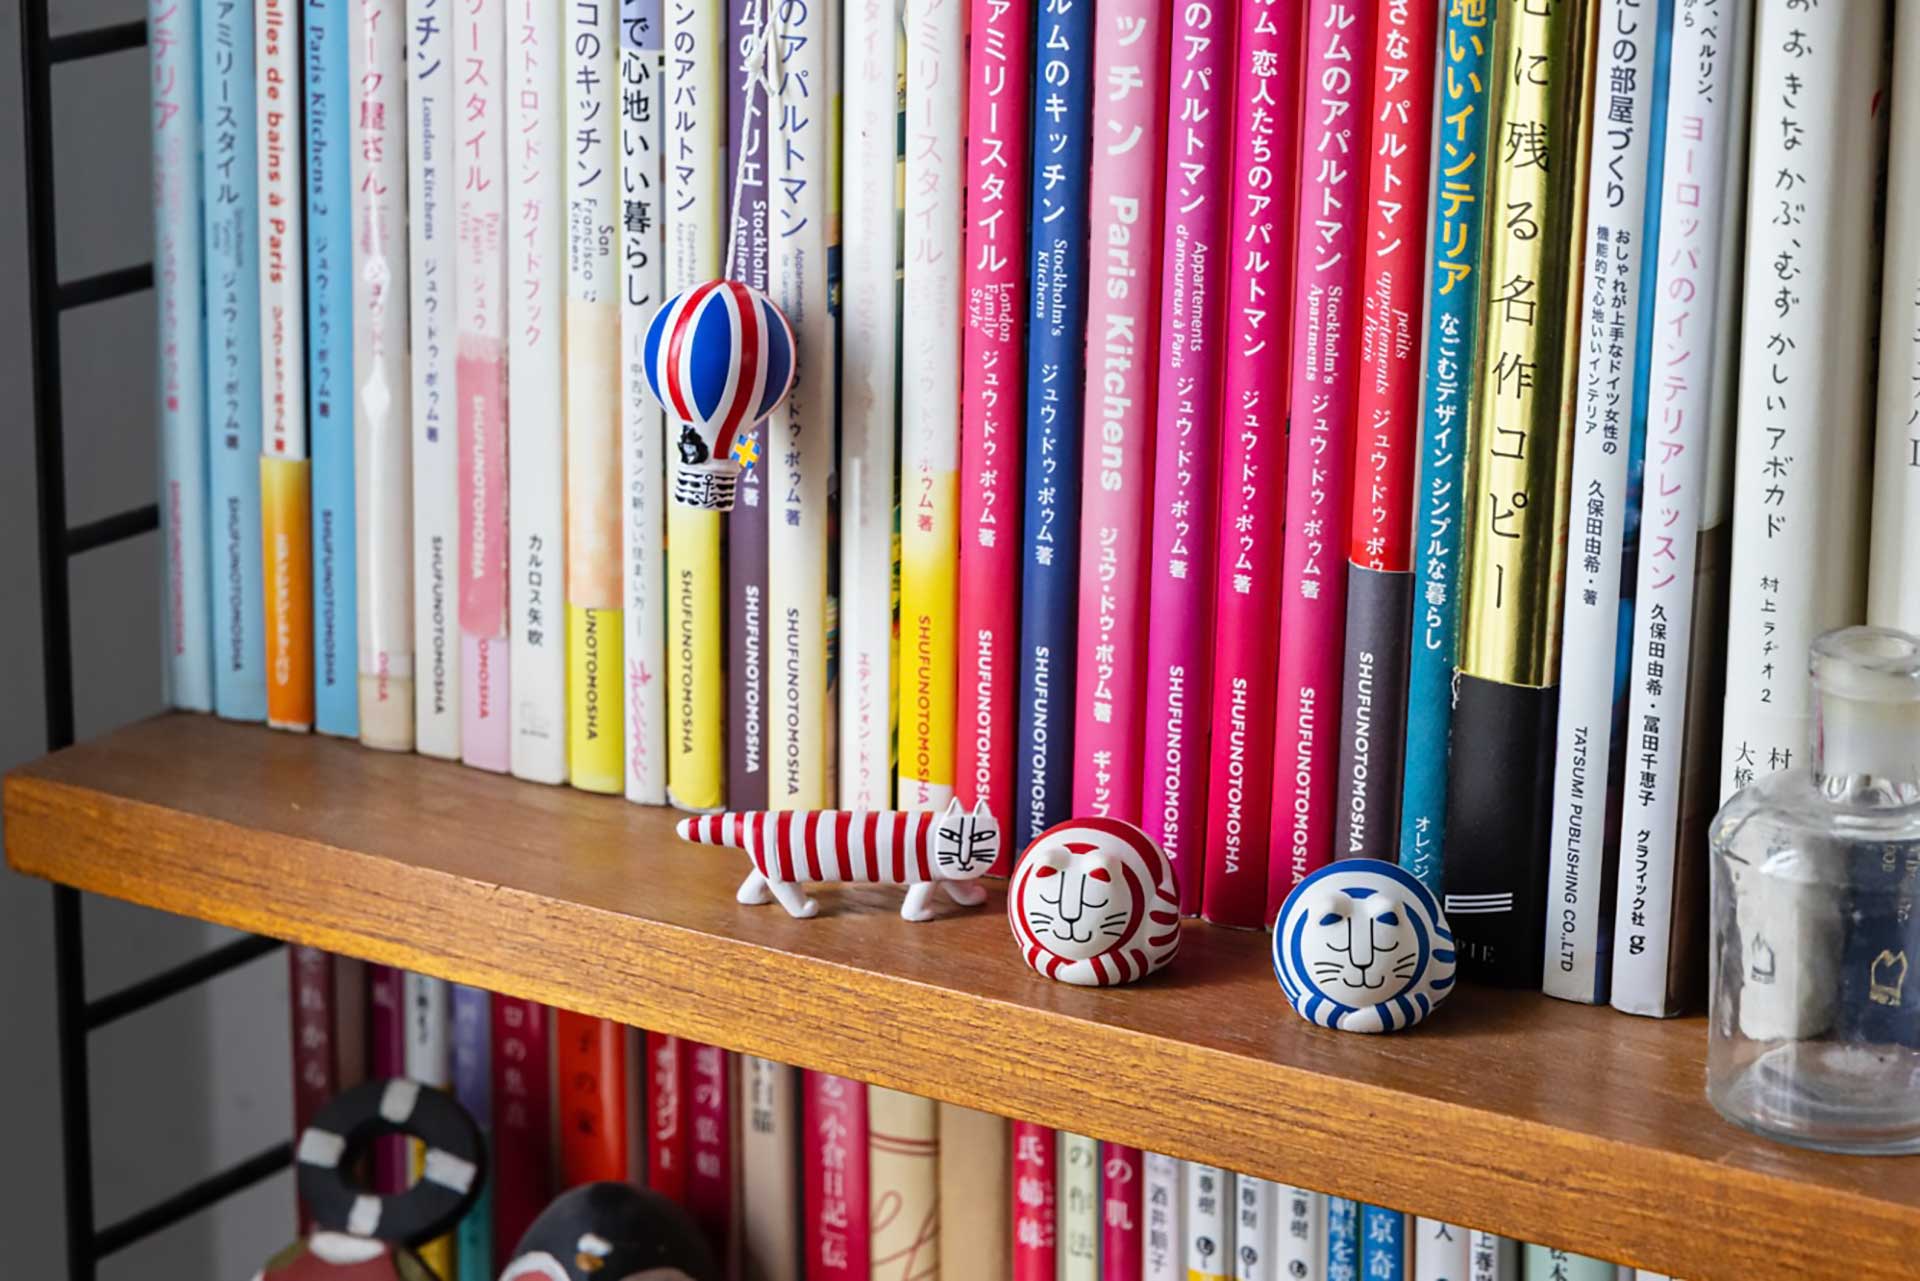 小さなフィギュアは、本棚の隙間などのちょっとしたスペースに飾れるのが魅力。カラフルな猫マイキーやルドフルは、明るくハッピーな気分にしてくれる。カプセルＱミュージアム リサ・ラーソン ミニュチュアファブリカ　ルドルフ(青・赤)・マイキー・気球　全高約50mm　カプセル商品一回500円　©LISA LARSON